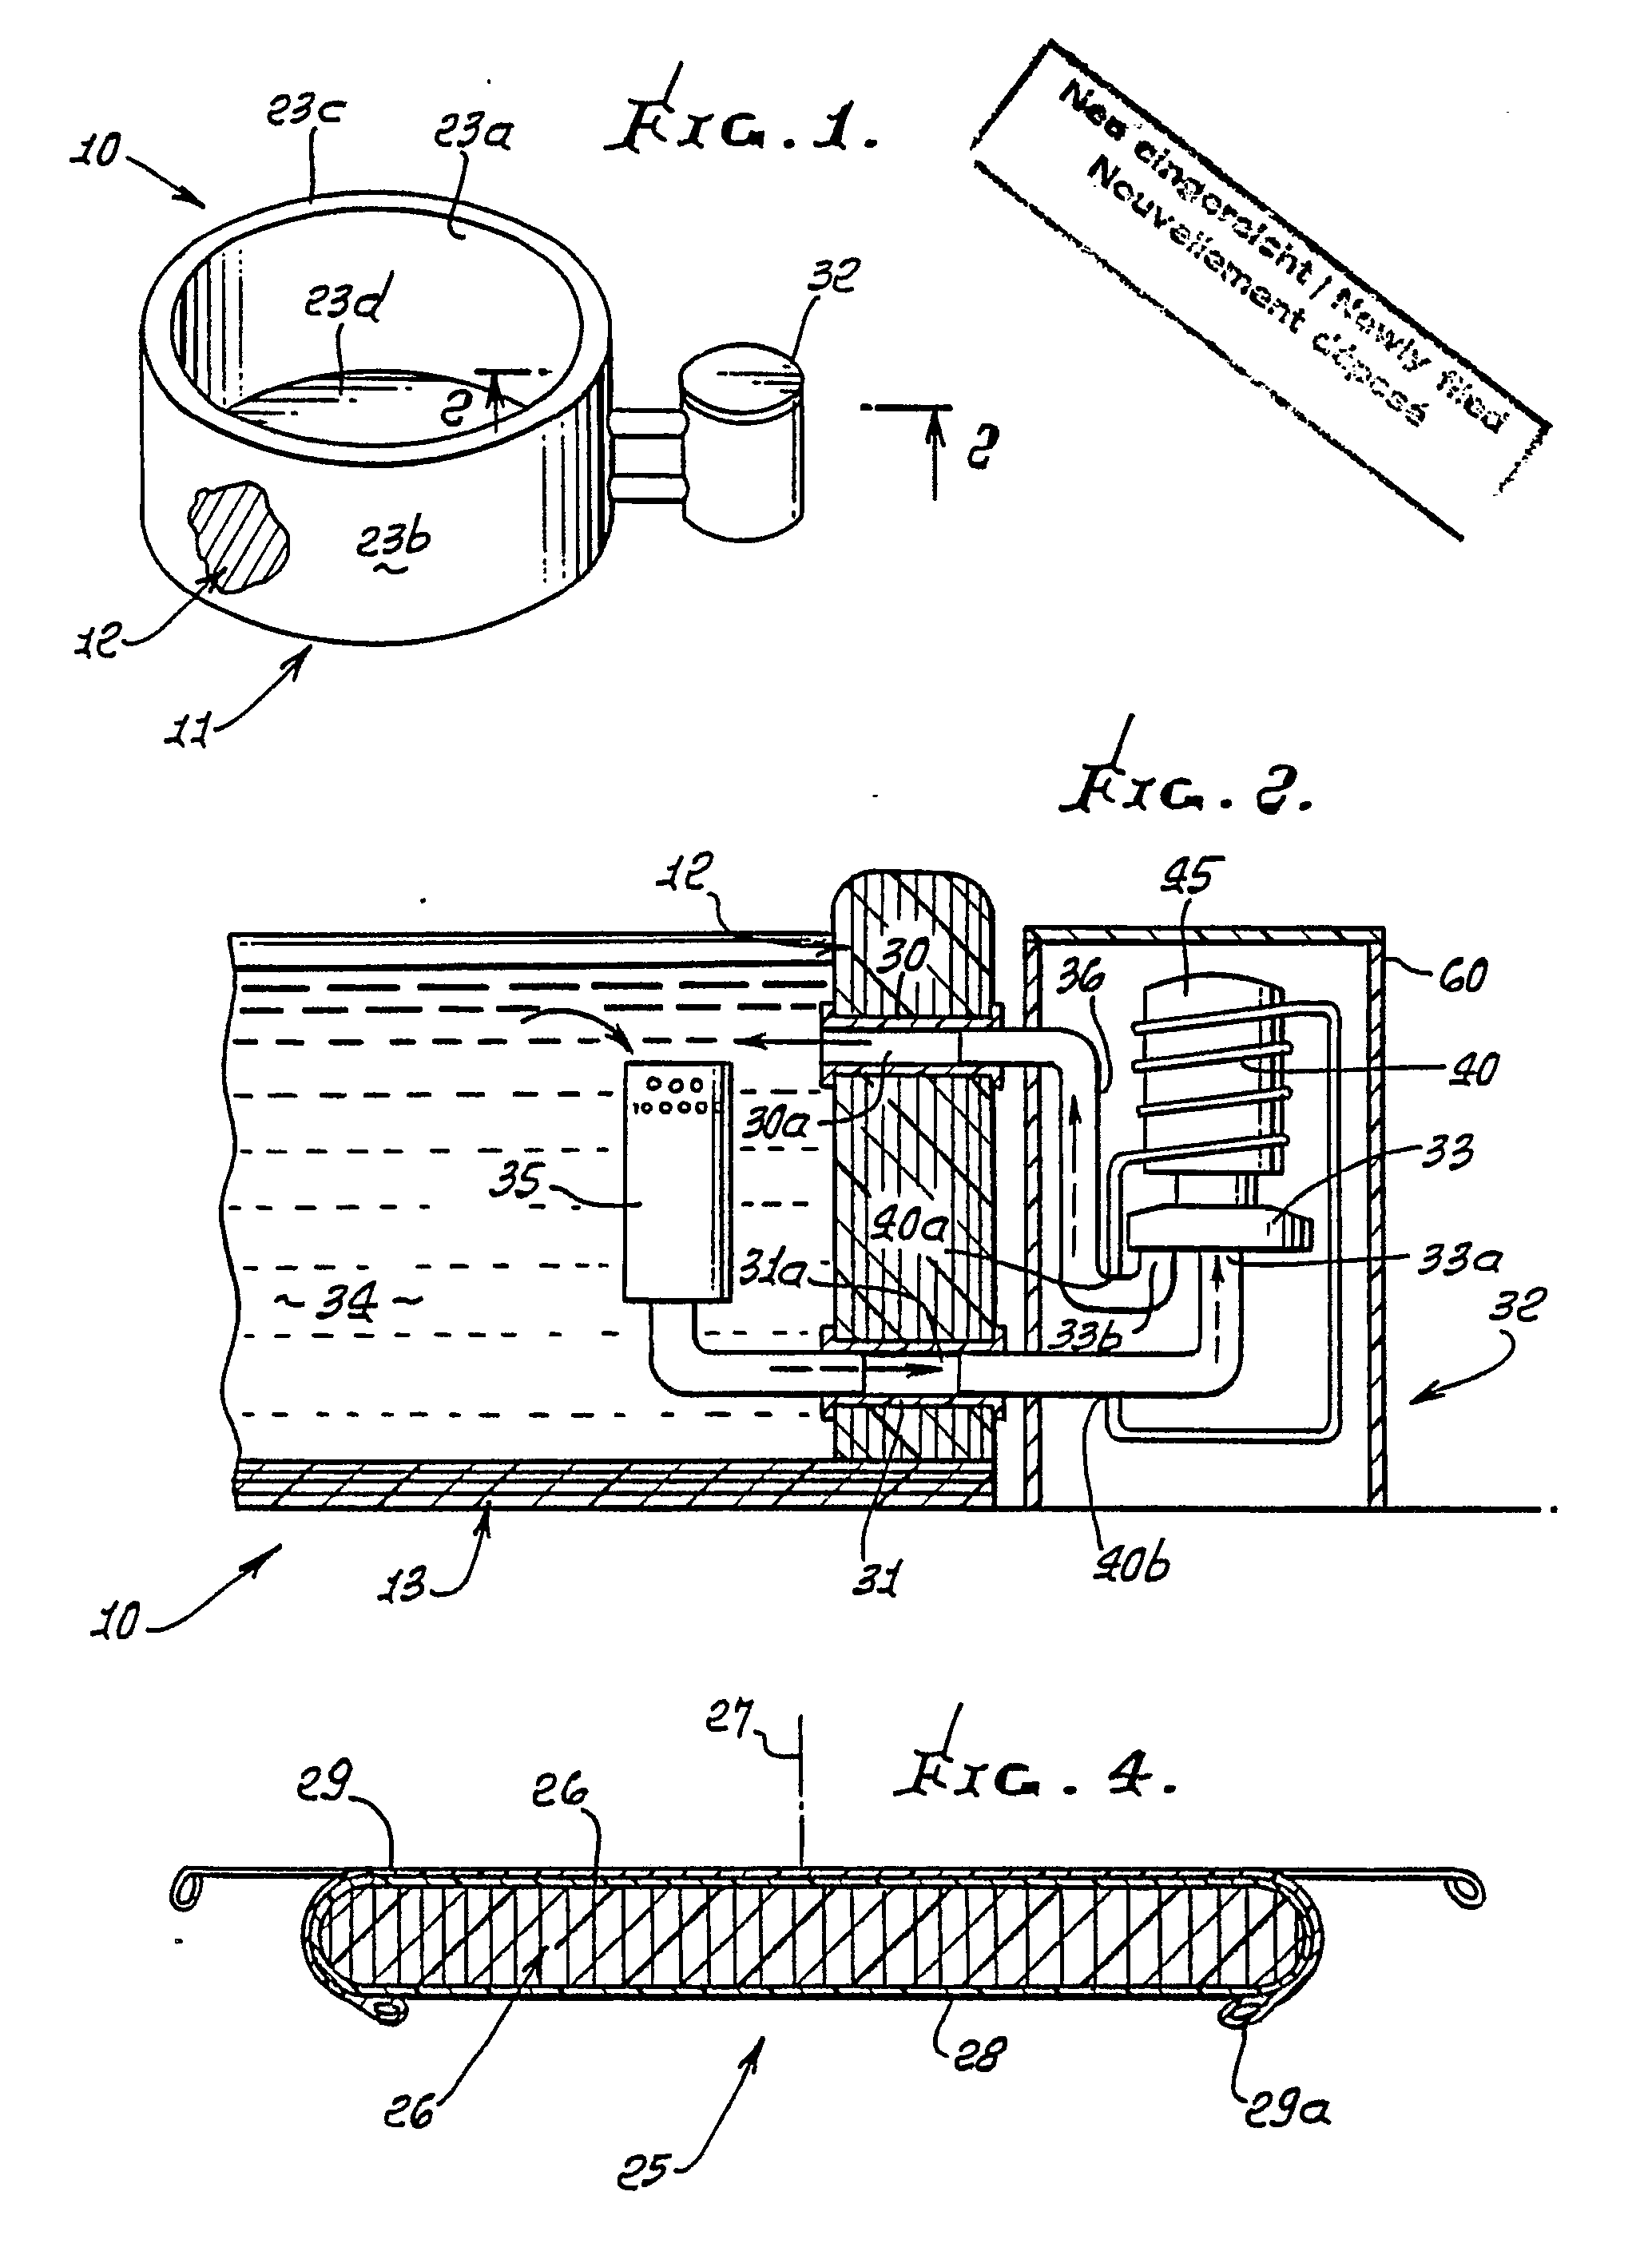 softub parts diagram